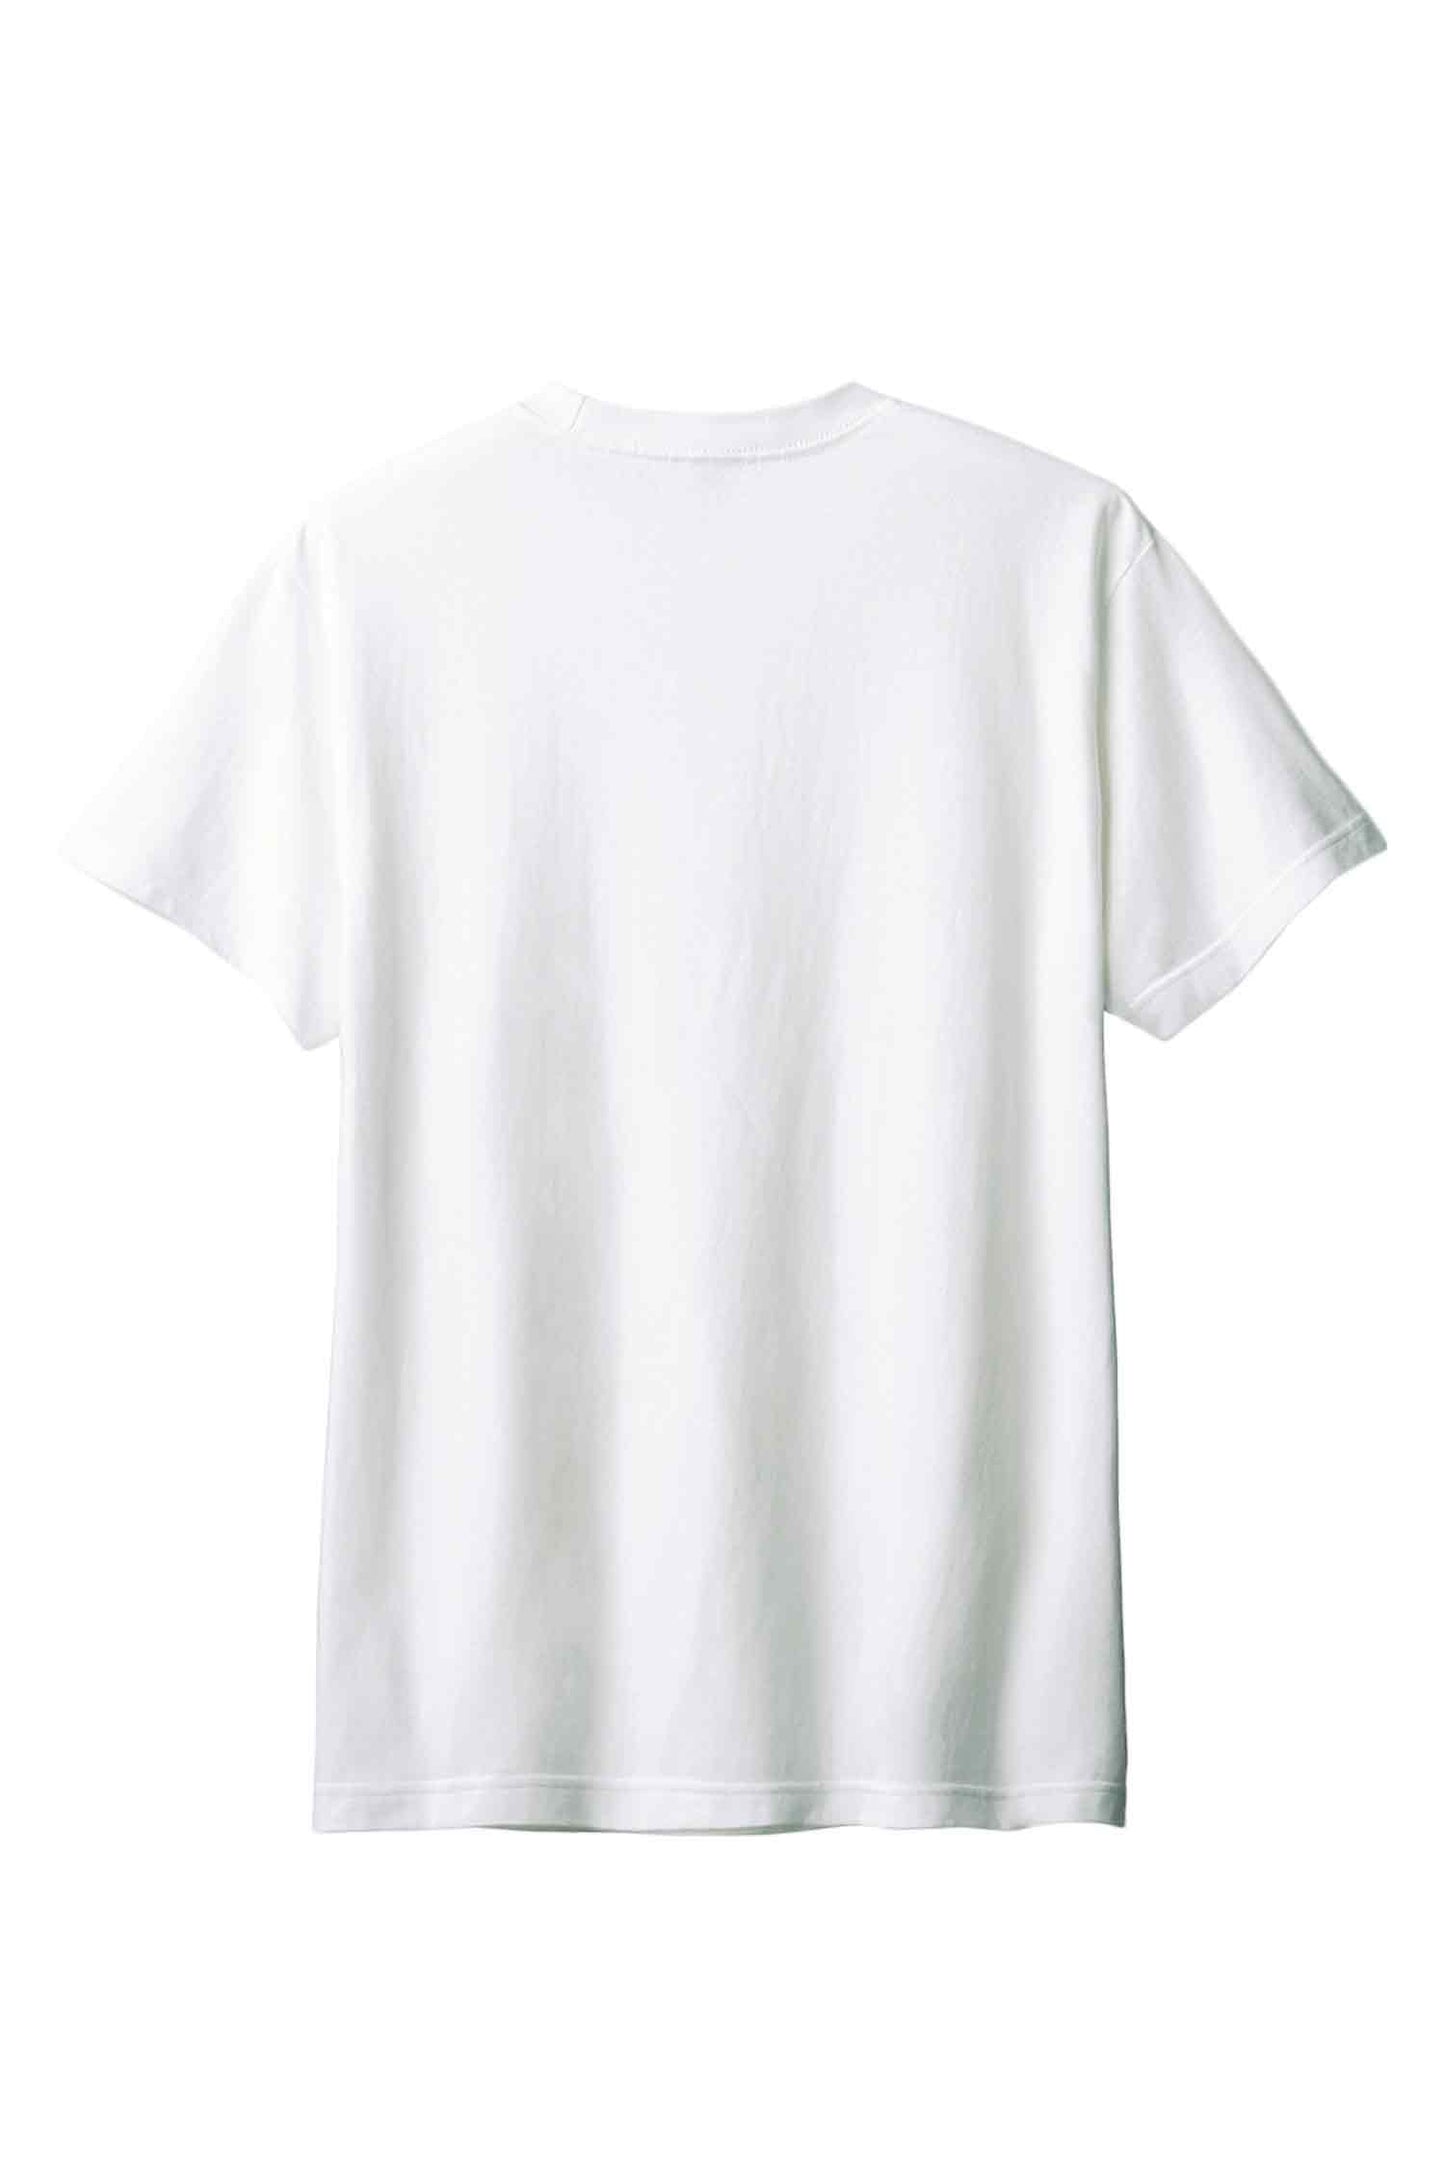 【PORCHESTRA】初夏の一枚！/プルメリア油彩画風Tシャツ - Plumeria Oil Painting Style Tee /cotton 100%/size:XS-XXL